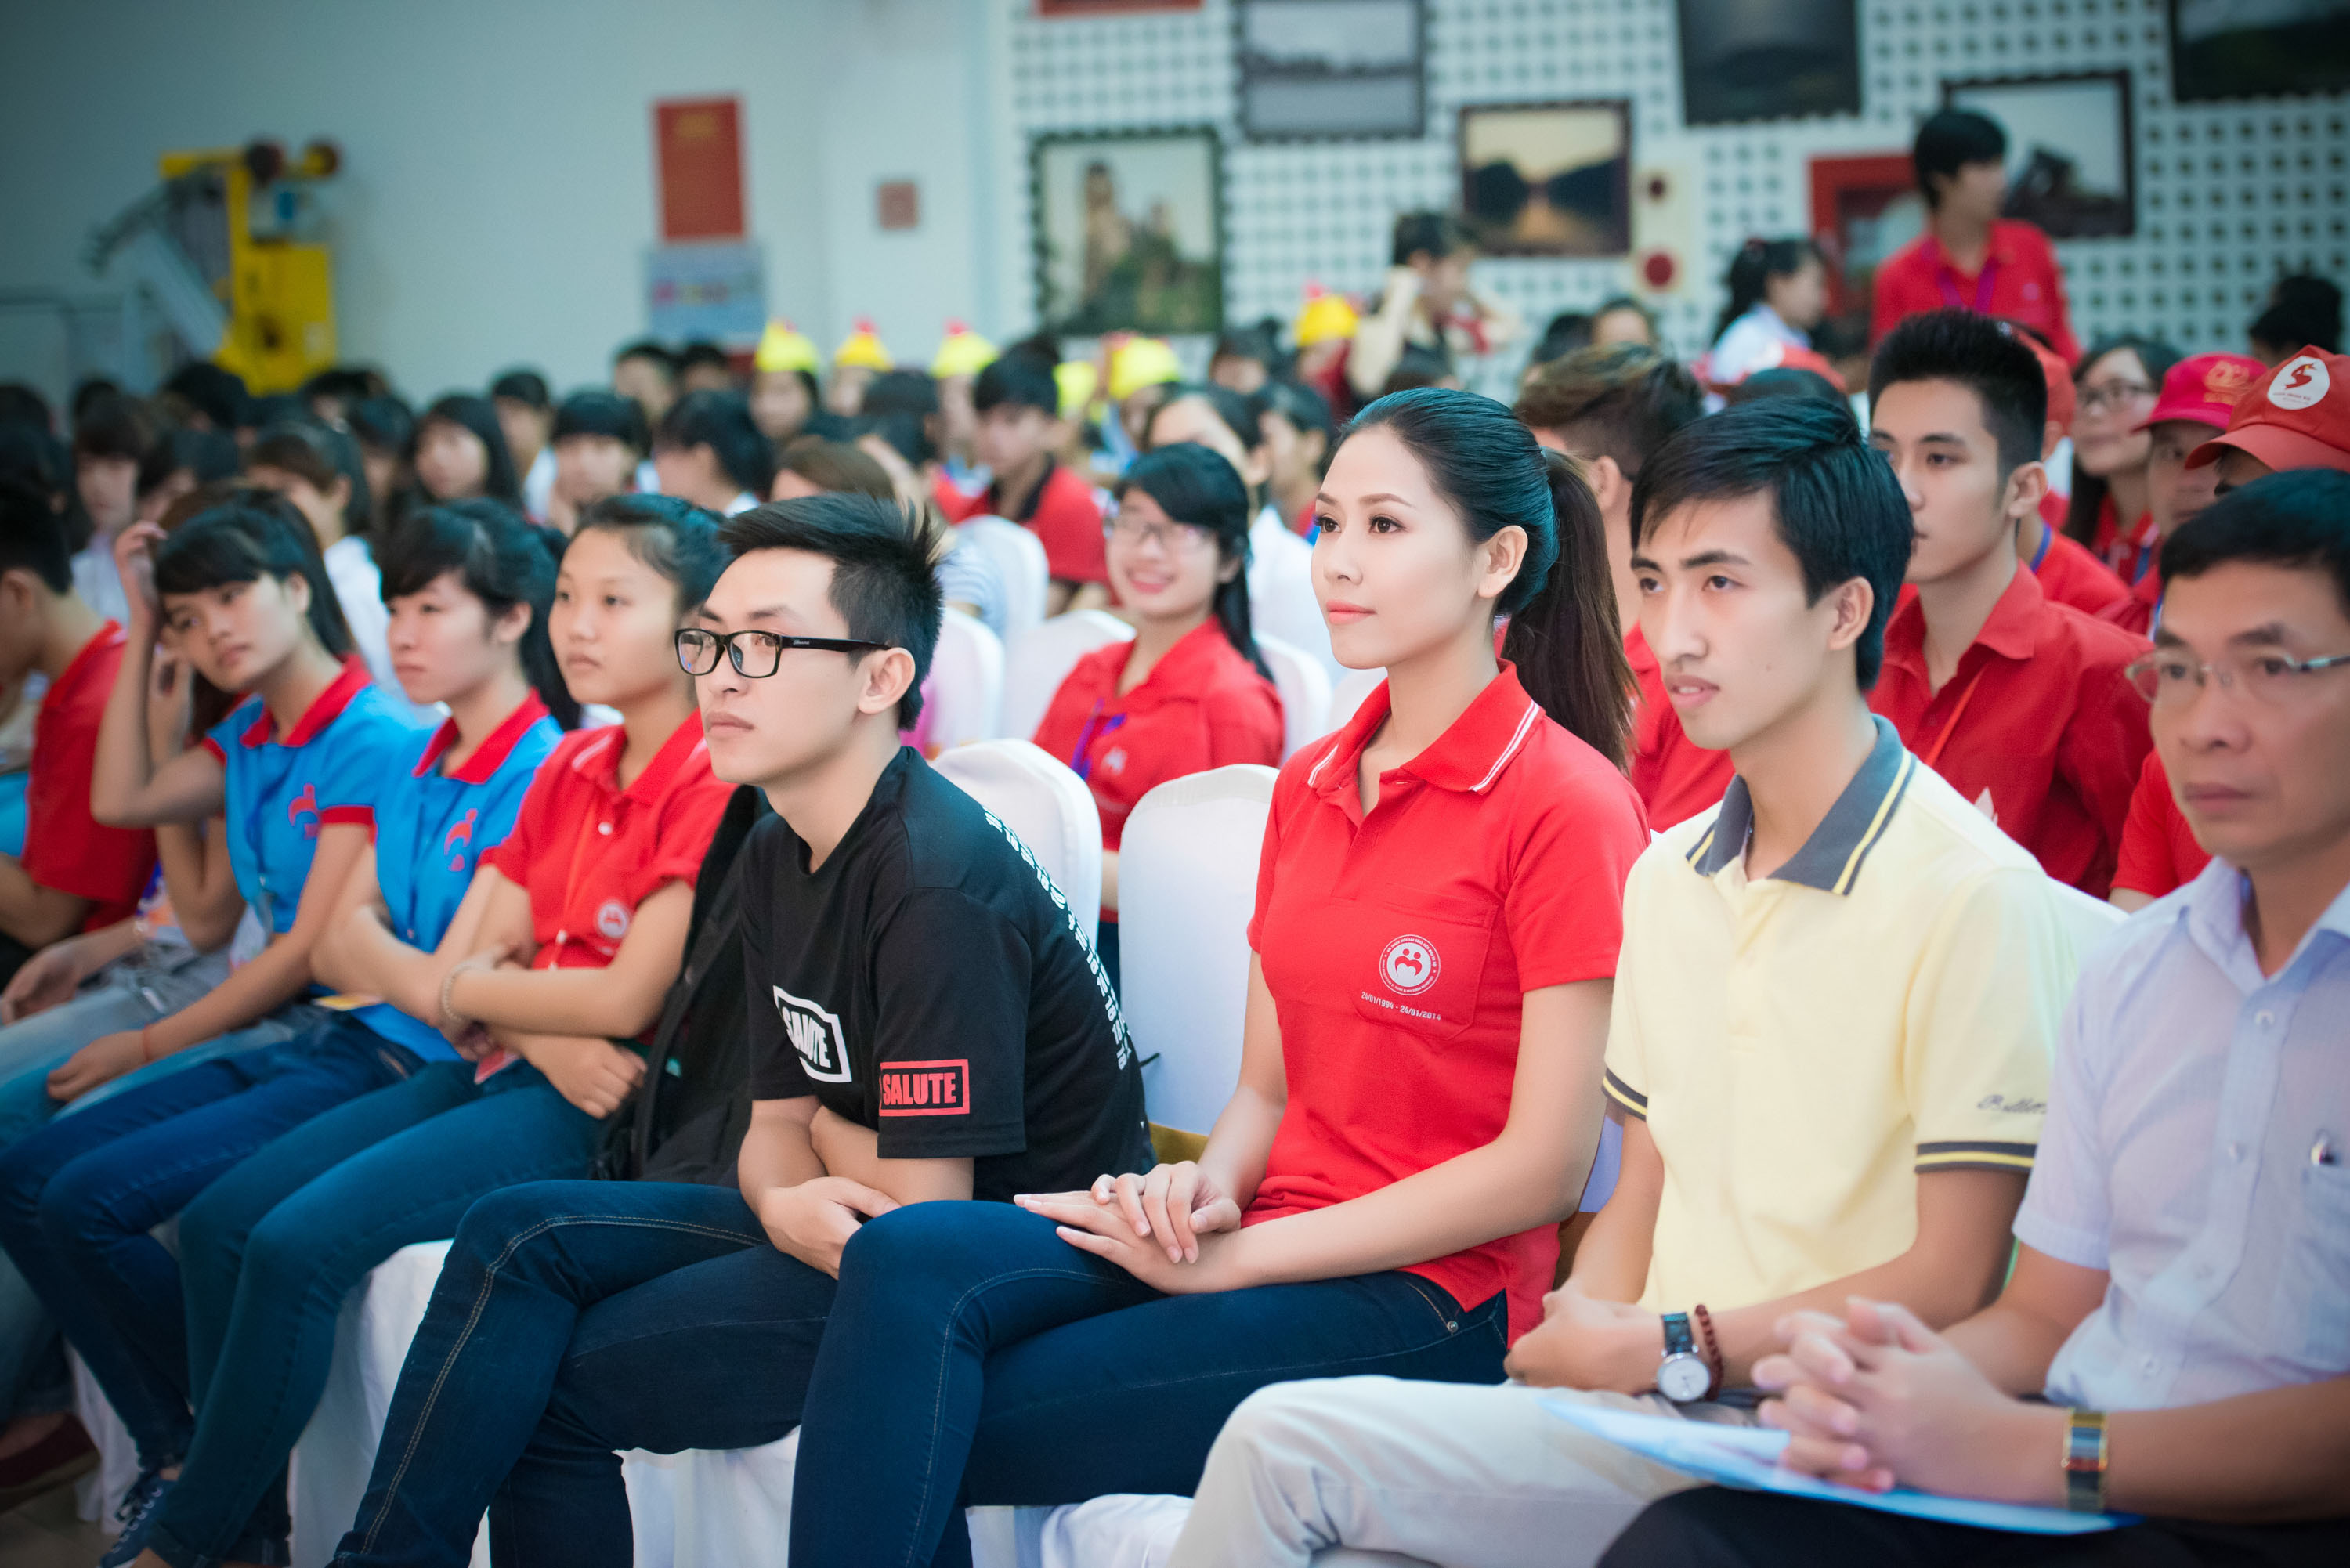  Chương trình vừa là để tiếp nhận, bổ sung thêm số lương đơn vị máu đang bị thiếu hụt đồng thời cũng là lễ phát động hưởng ứng và công bố đội hành trình xuyên Việt của chương trình hiến máu Hành trình đỏ sẽ diễn ra trong tháng 7.